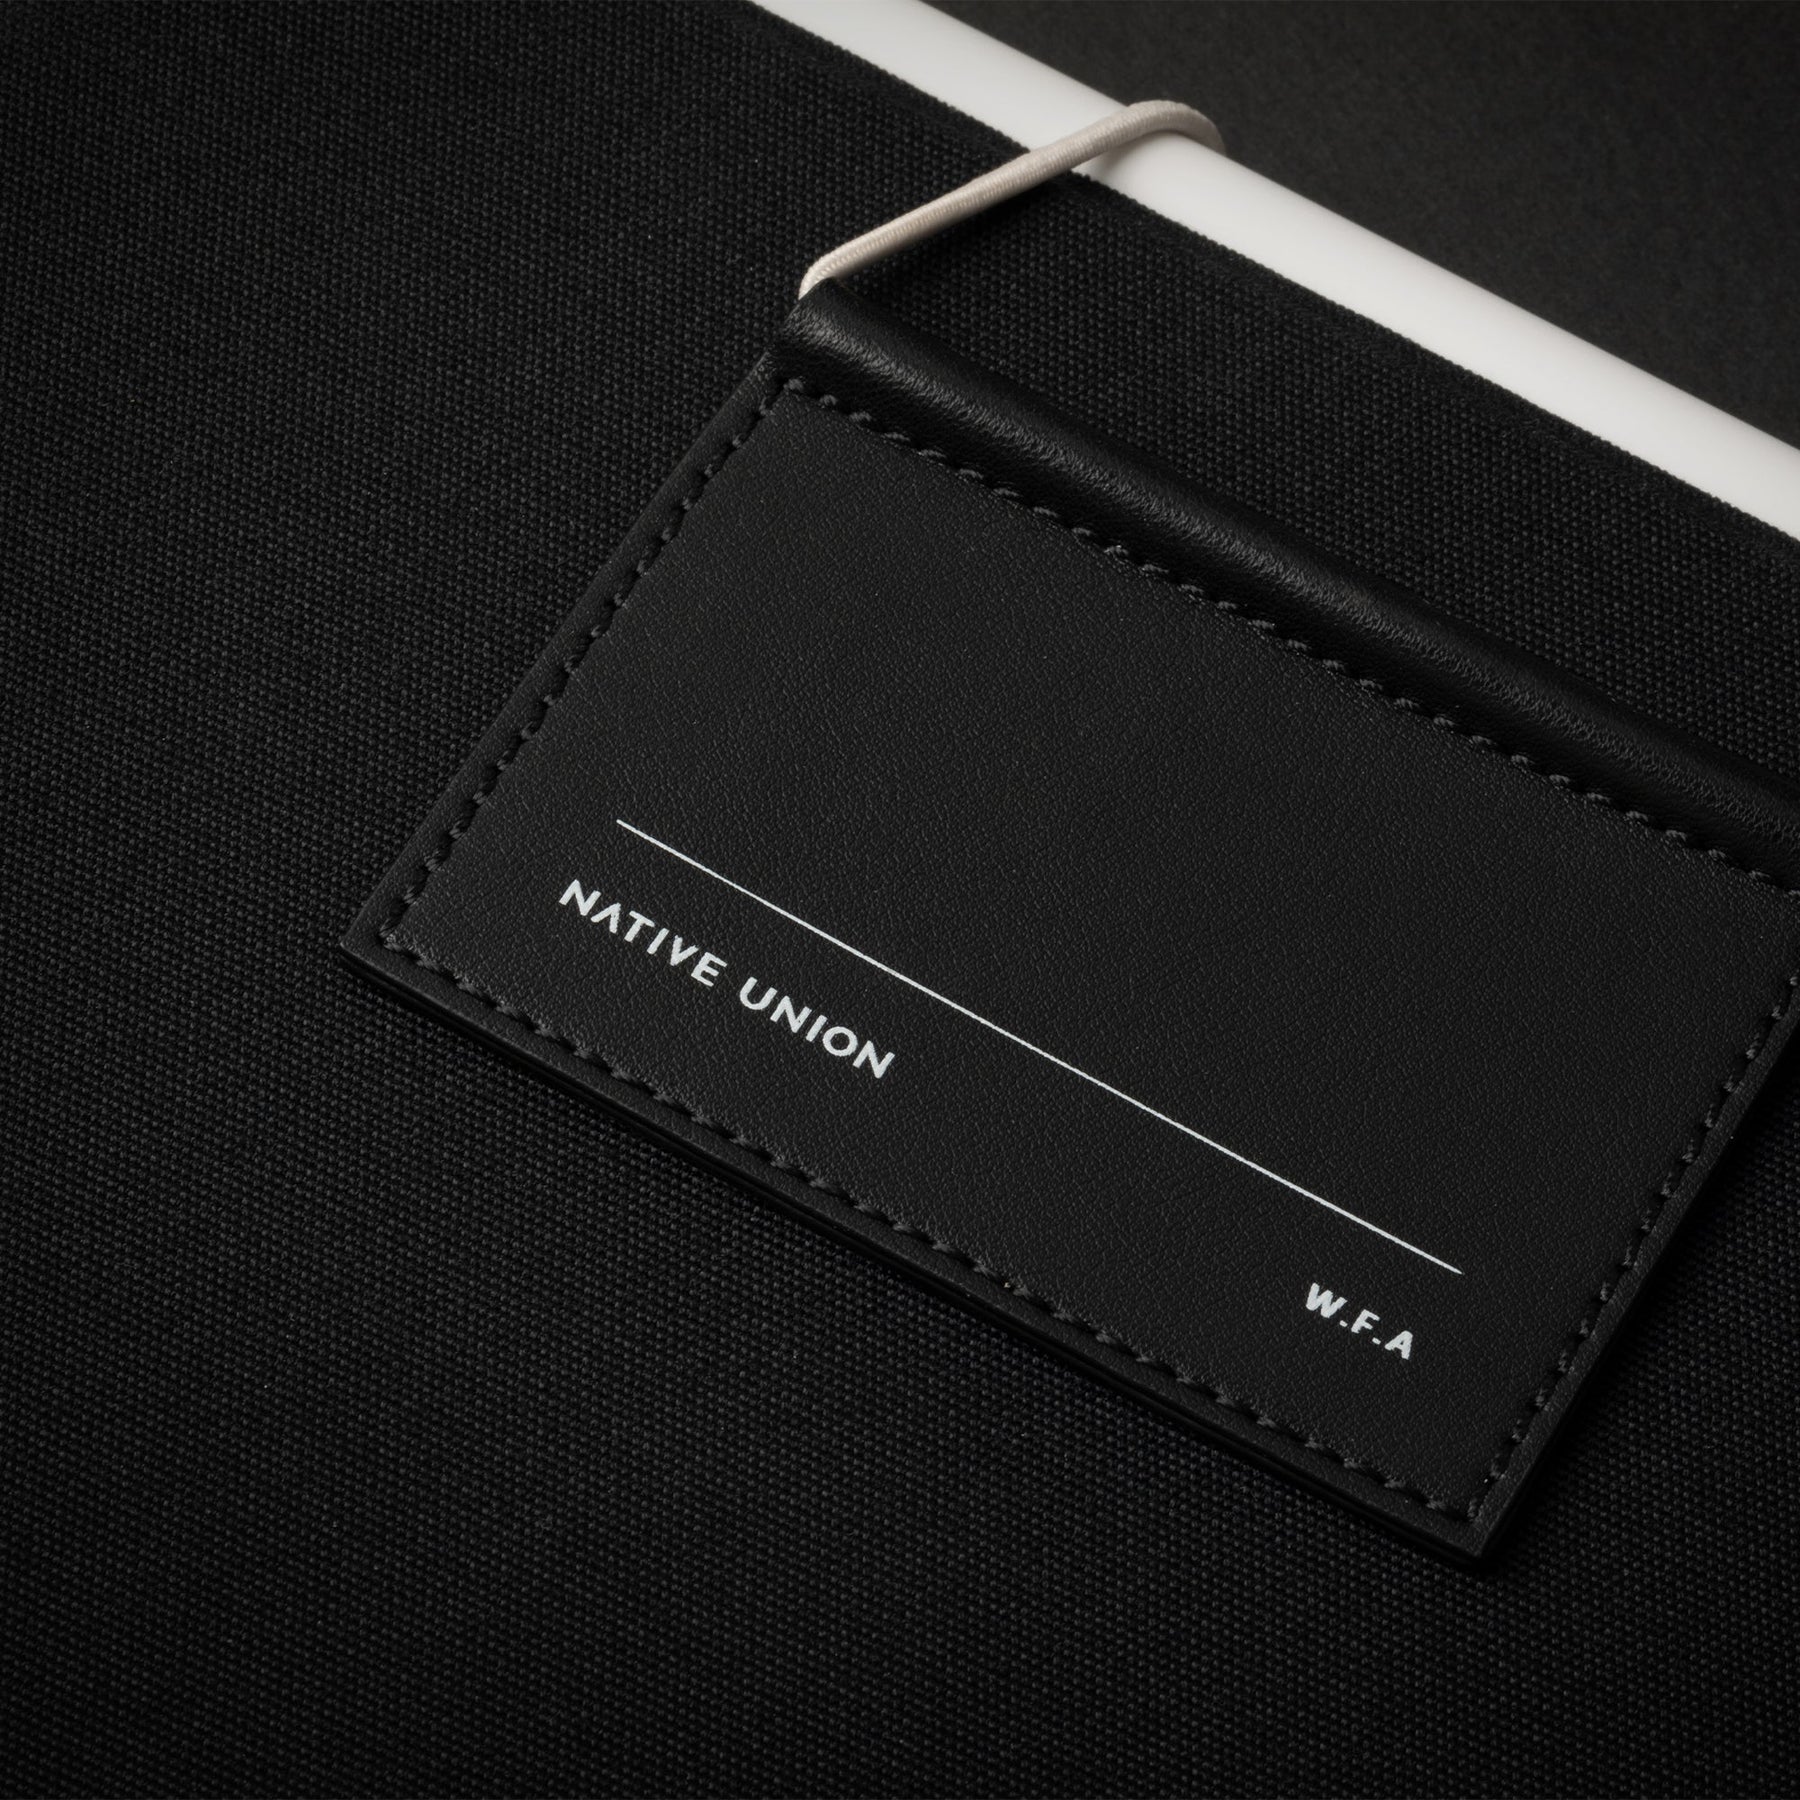 Saint Laurent Black leather iPad holder